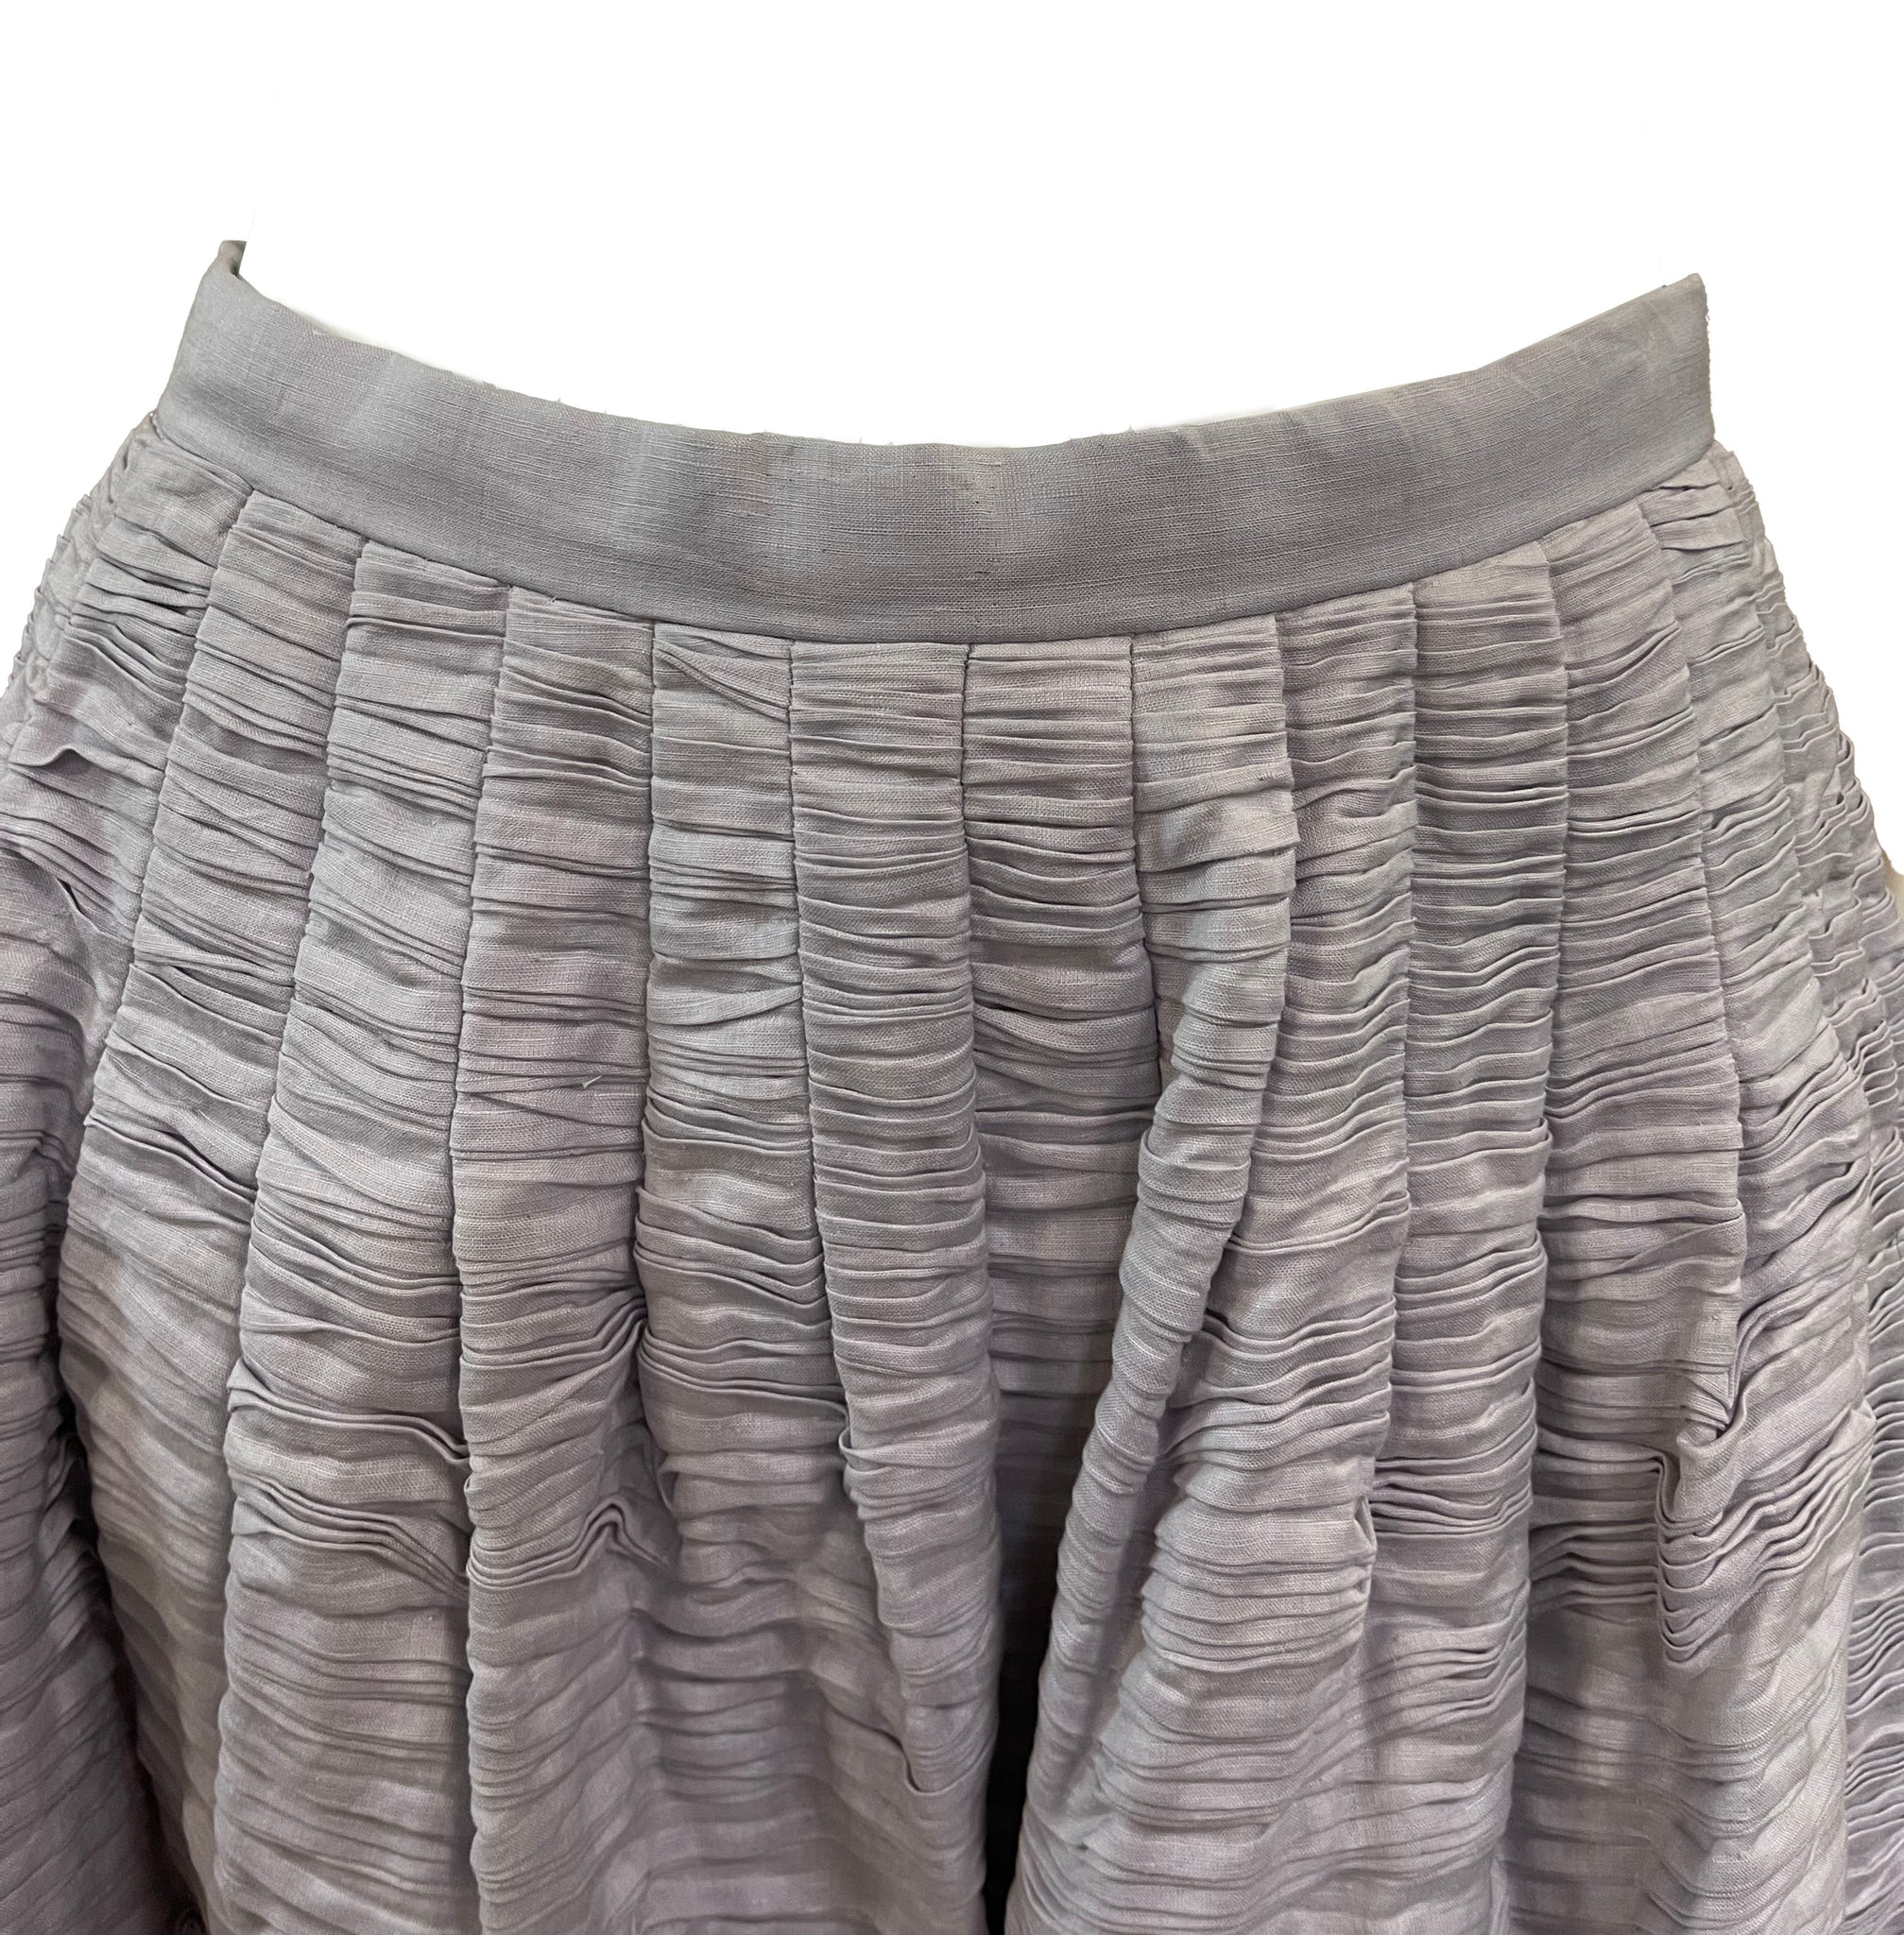 Sybil Connolly 60s Lavender  Full Length Skirt DETAIL 3 of 5